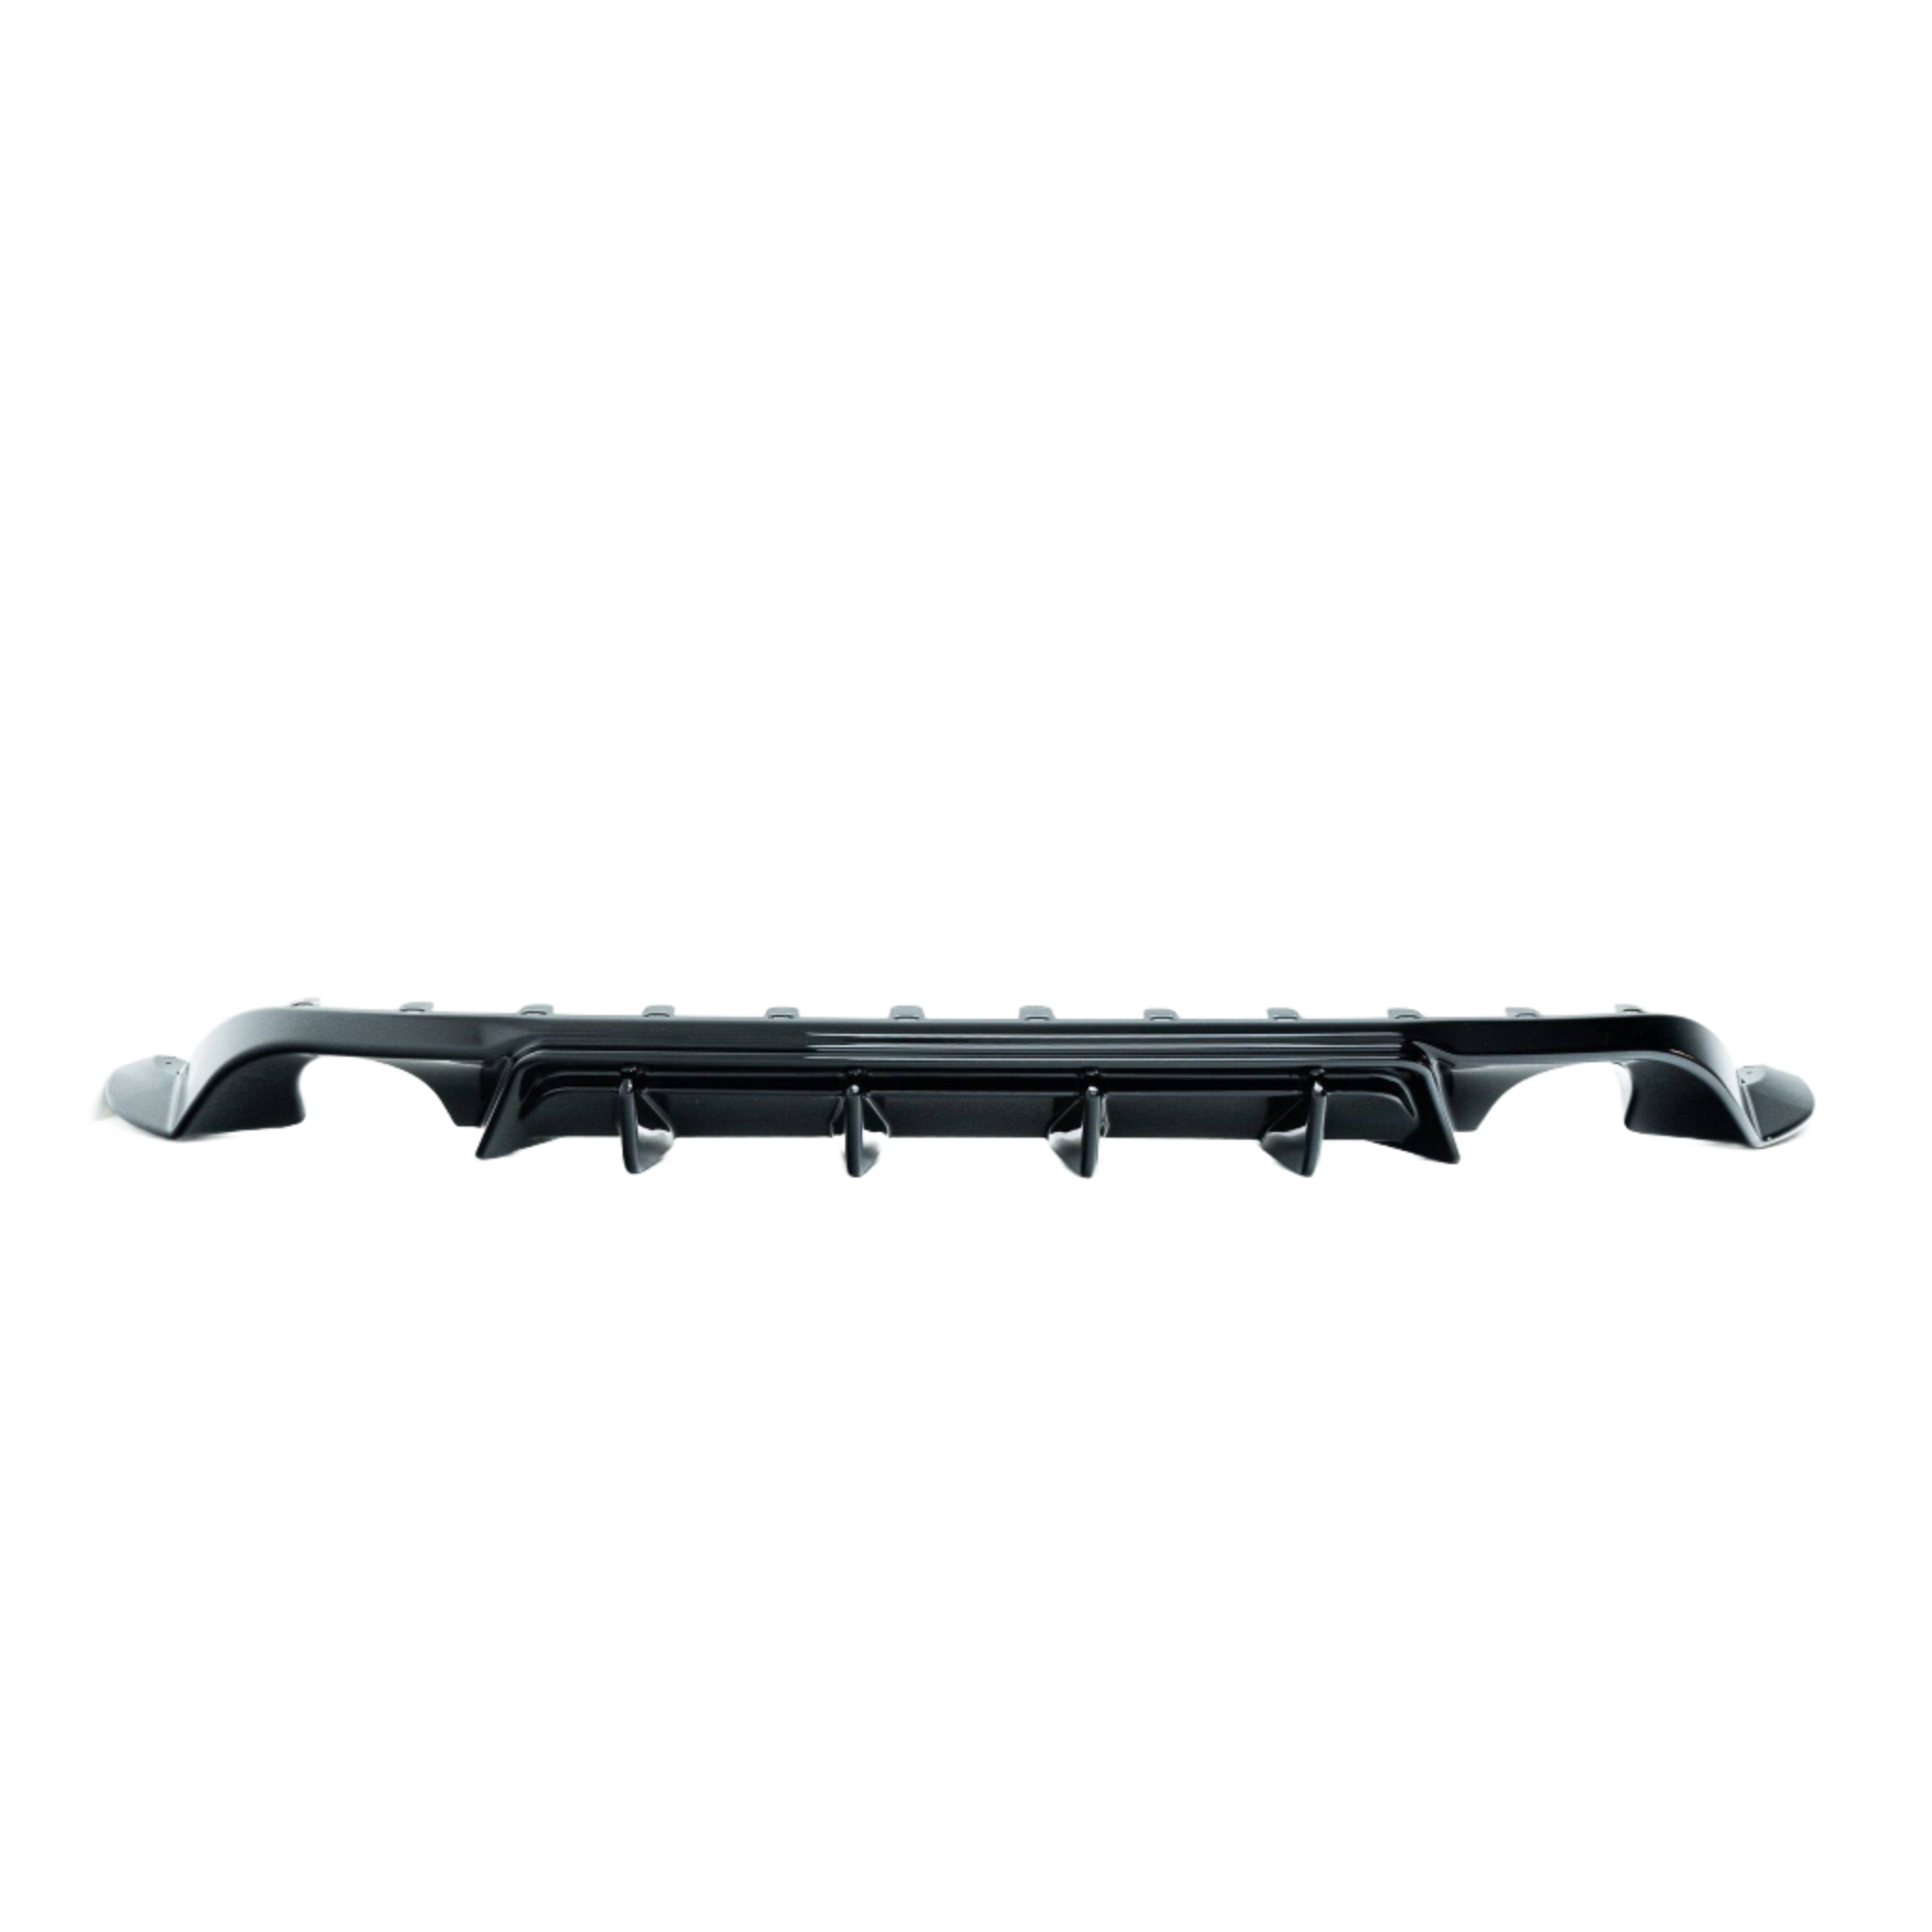 VW Golf GTI Mk7.5 EVO-1 Gloss Black Rear Diffuser by ZAERO (2017-2020), Rear Diffusers, Zaero Design - AUTOID | Premium Automotive Accessories